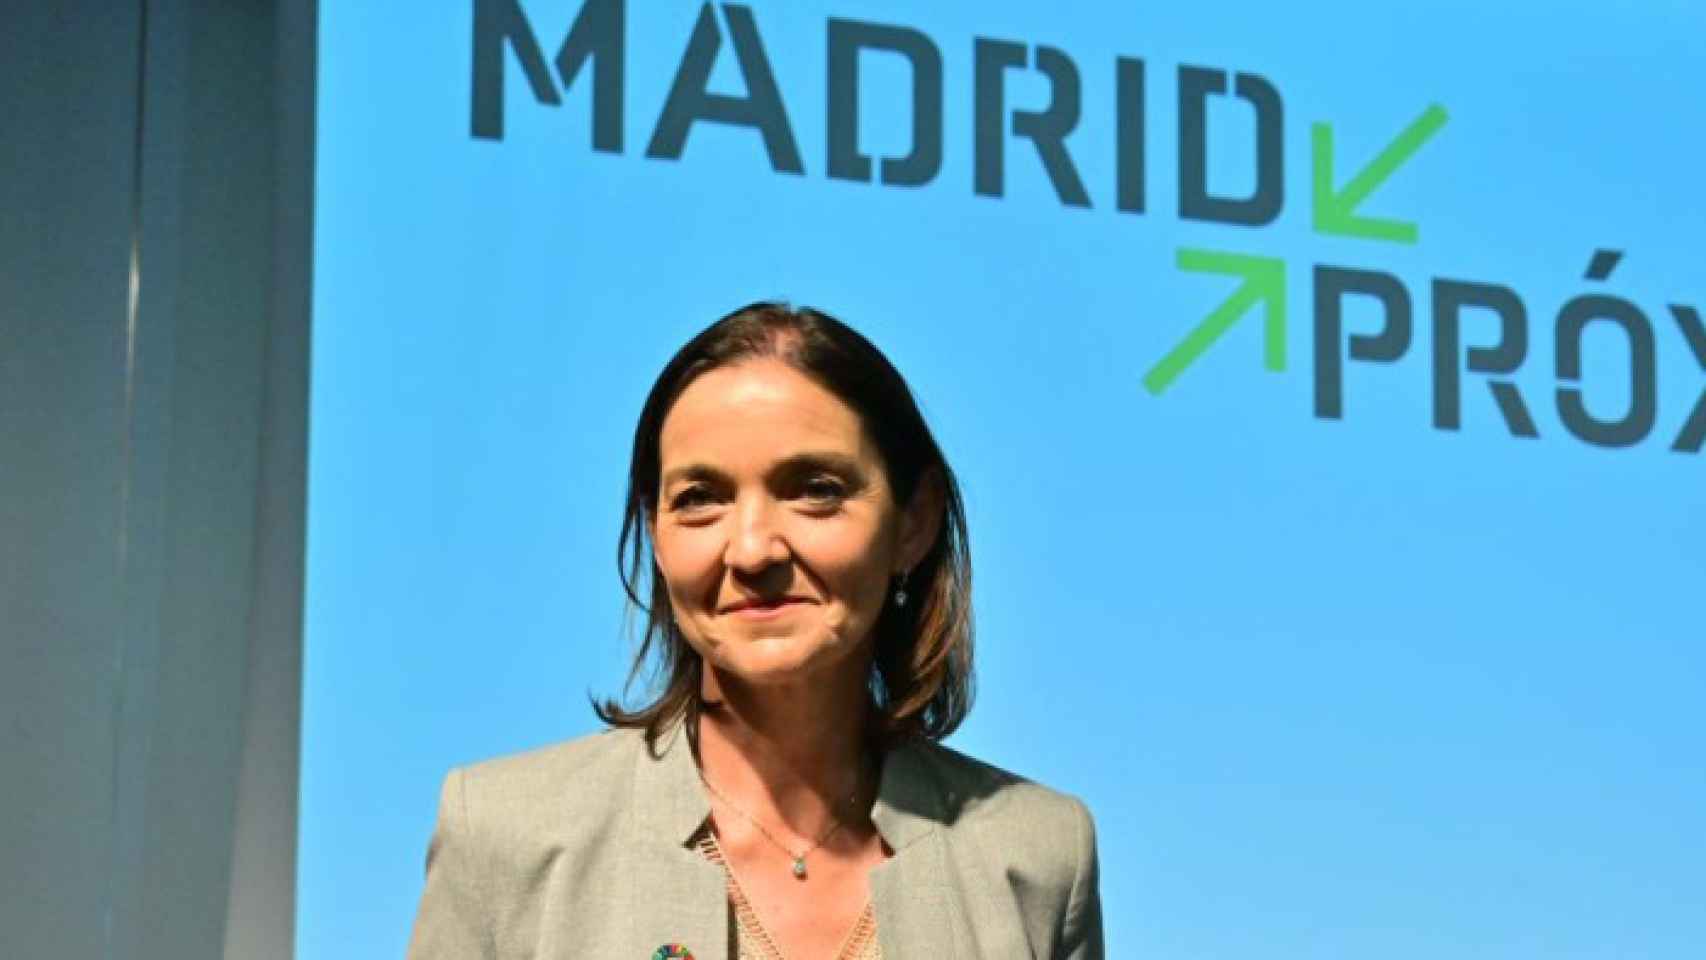 La candidata socialista a la Alcaldía de Madrid, Reyes Maroto, durante la presentación de 'Madrid Próximo', su propuesta urbanística.